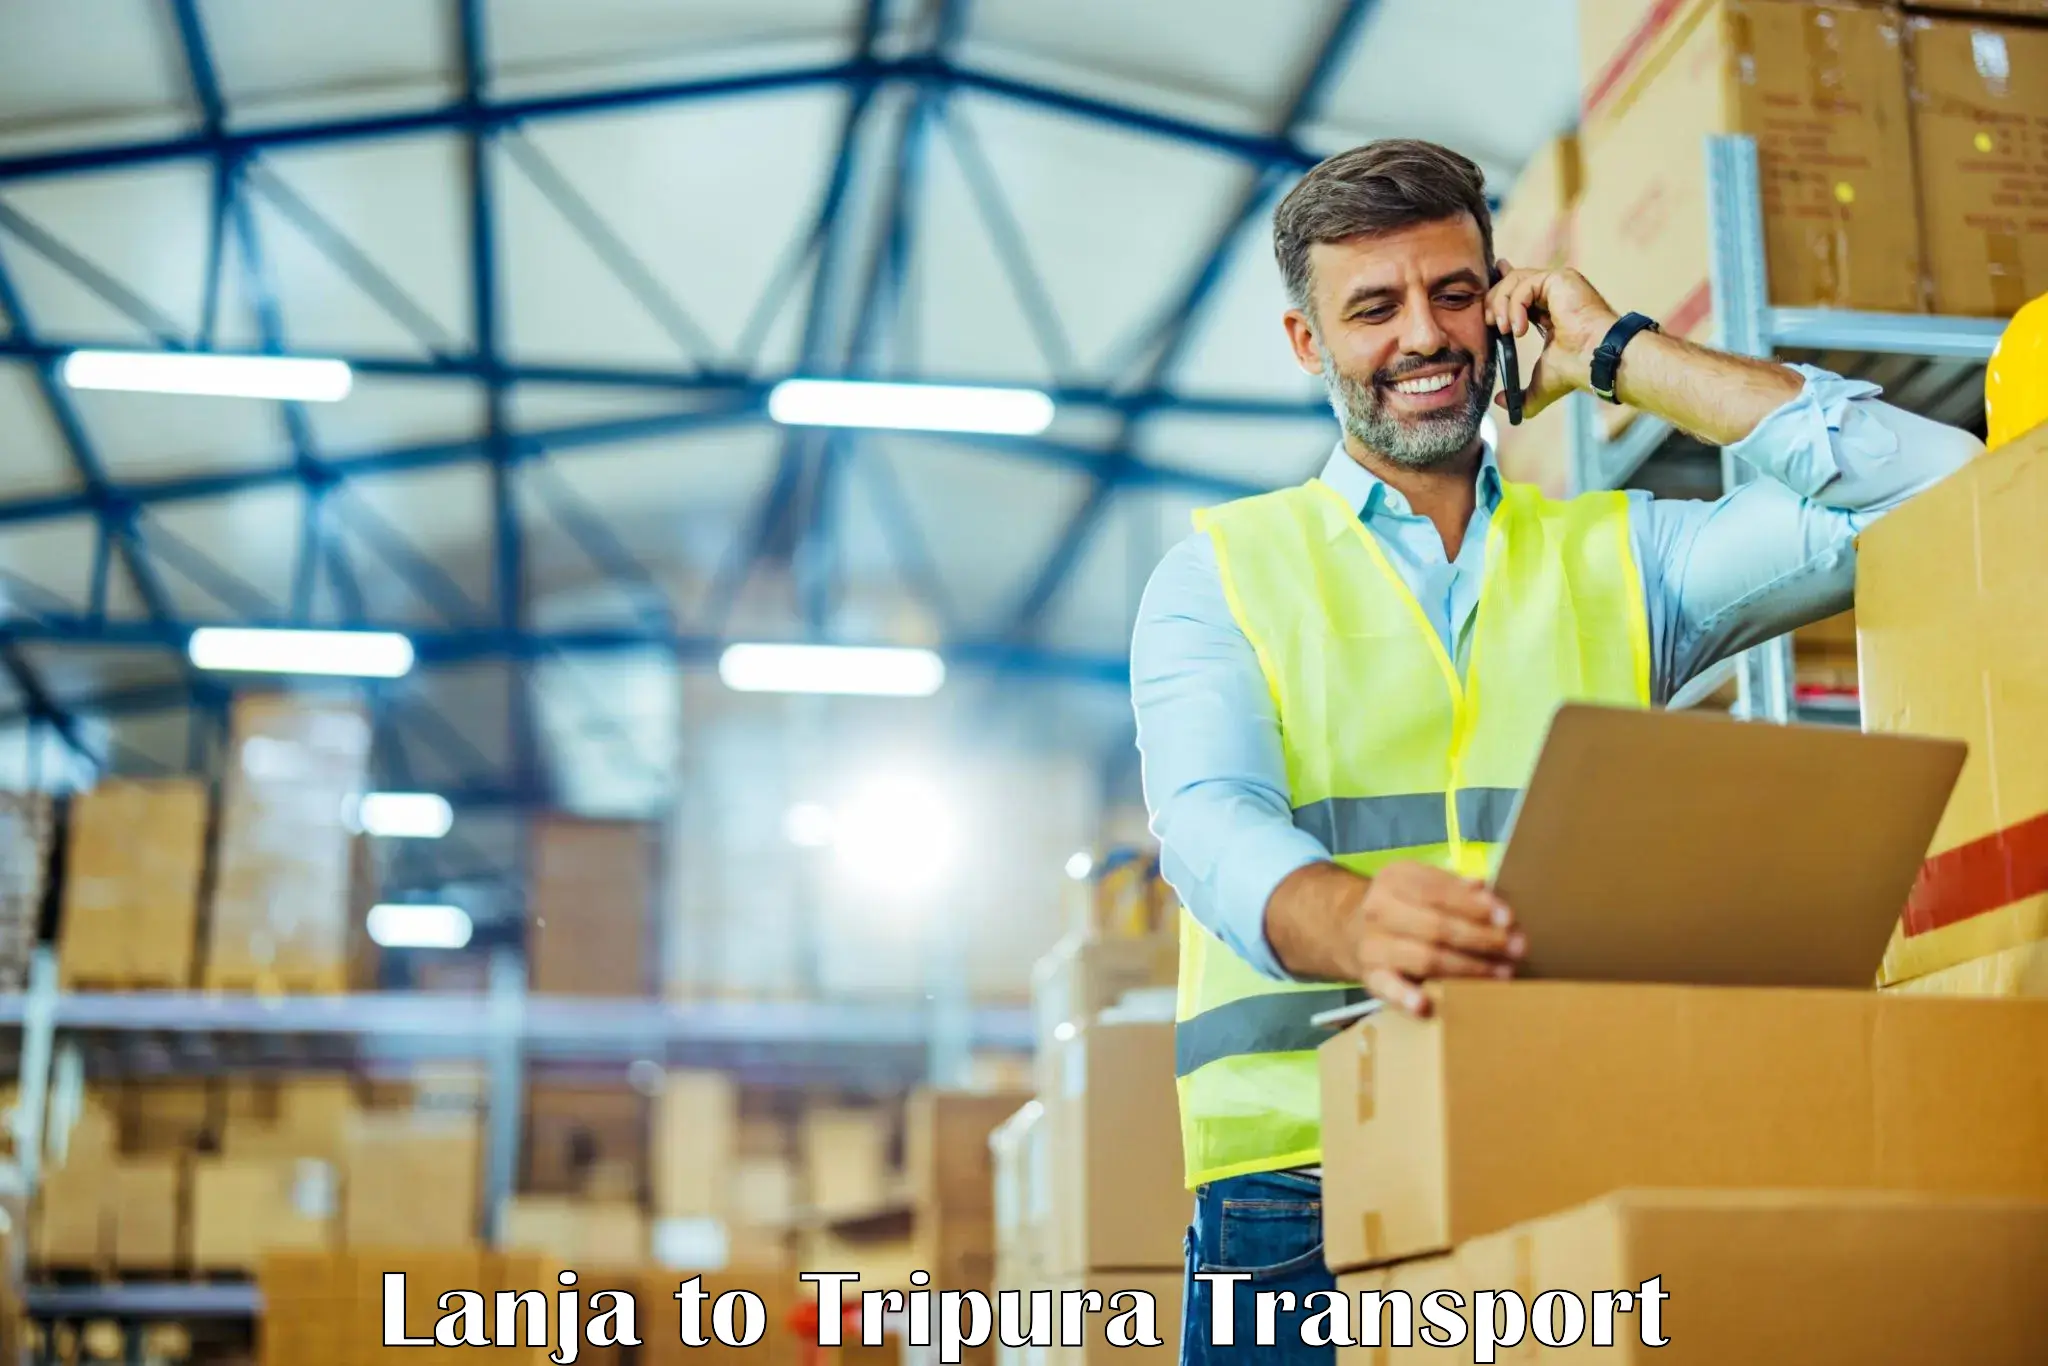 Furniture transport service Lanja to Tripura